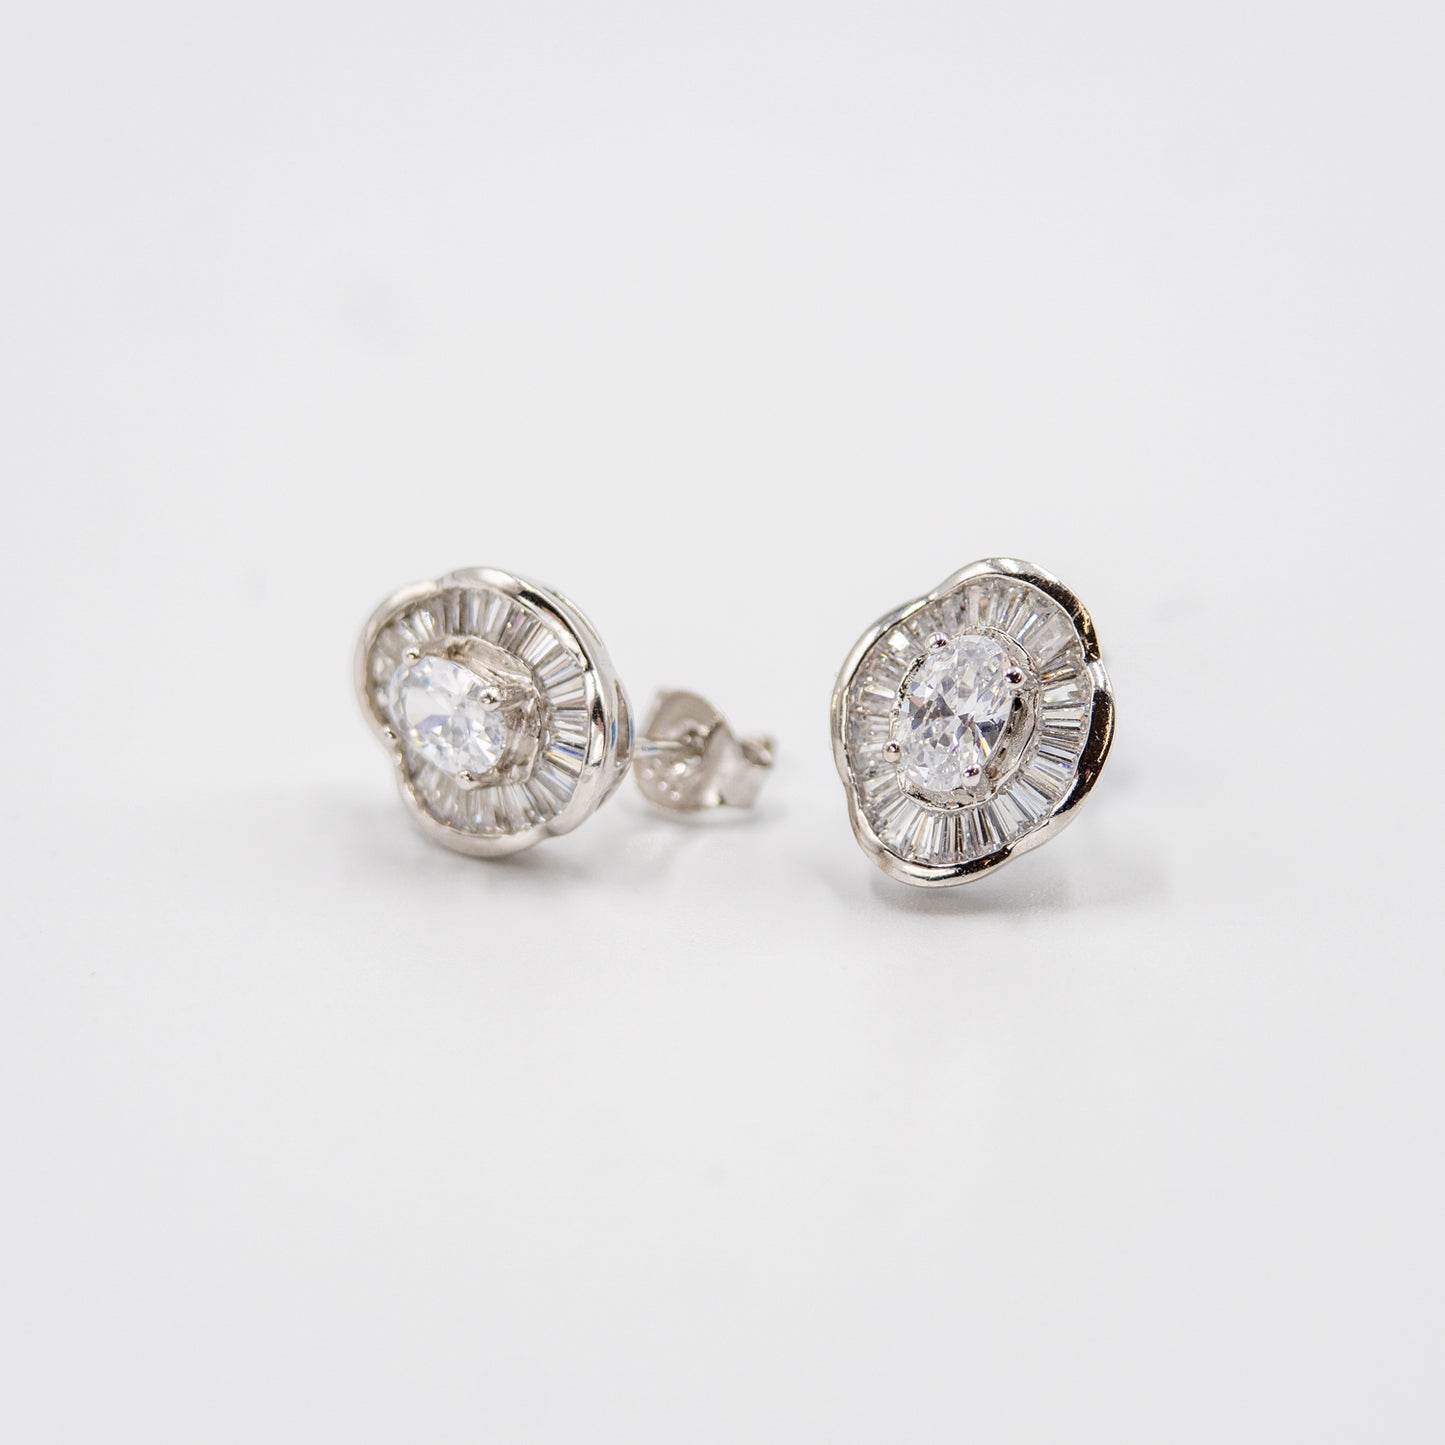 DK-925-160 Sterling silver earrings